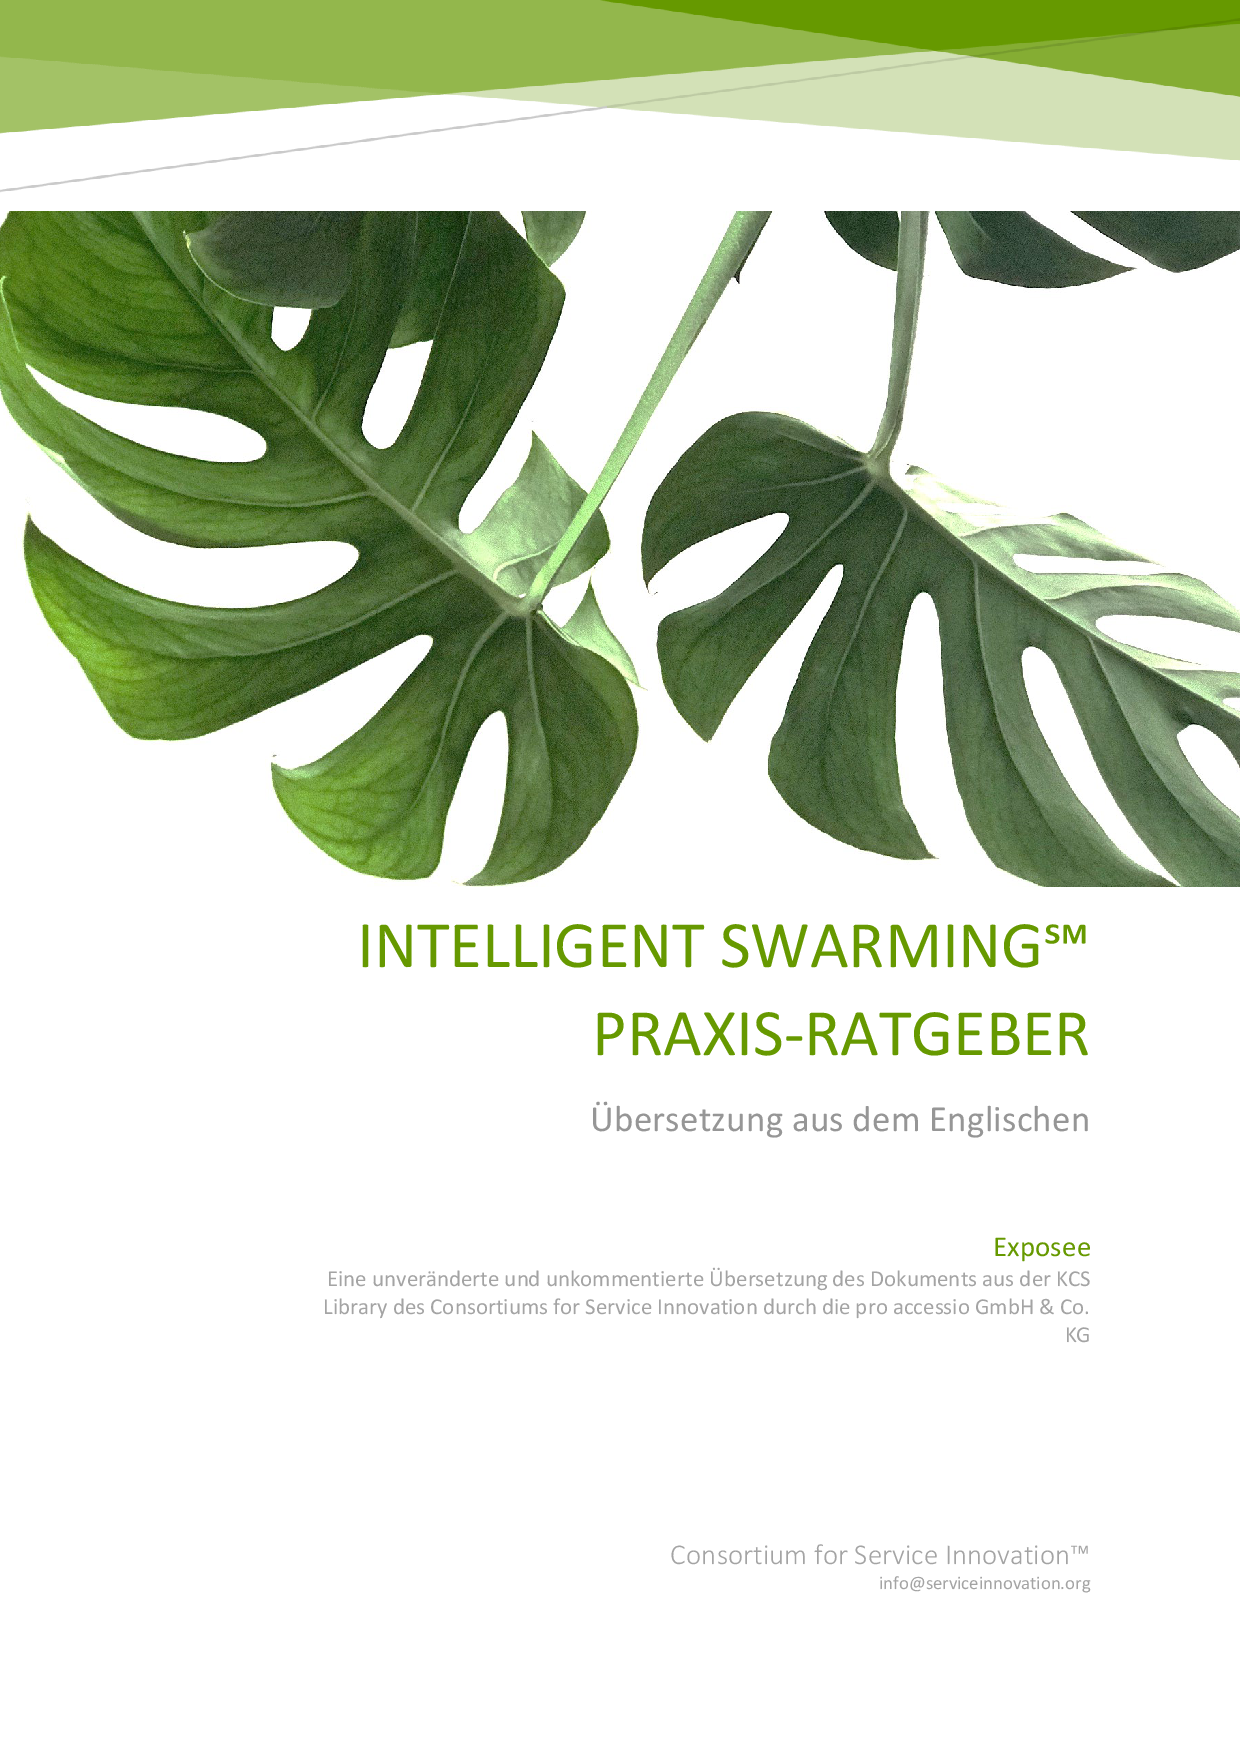 Vorschau auf das Titelbild des Intelligent Swarming Praxis-Ratgebers